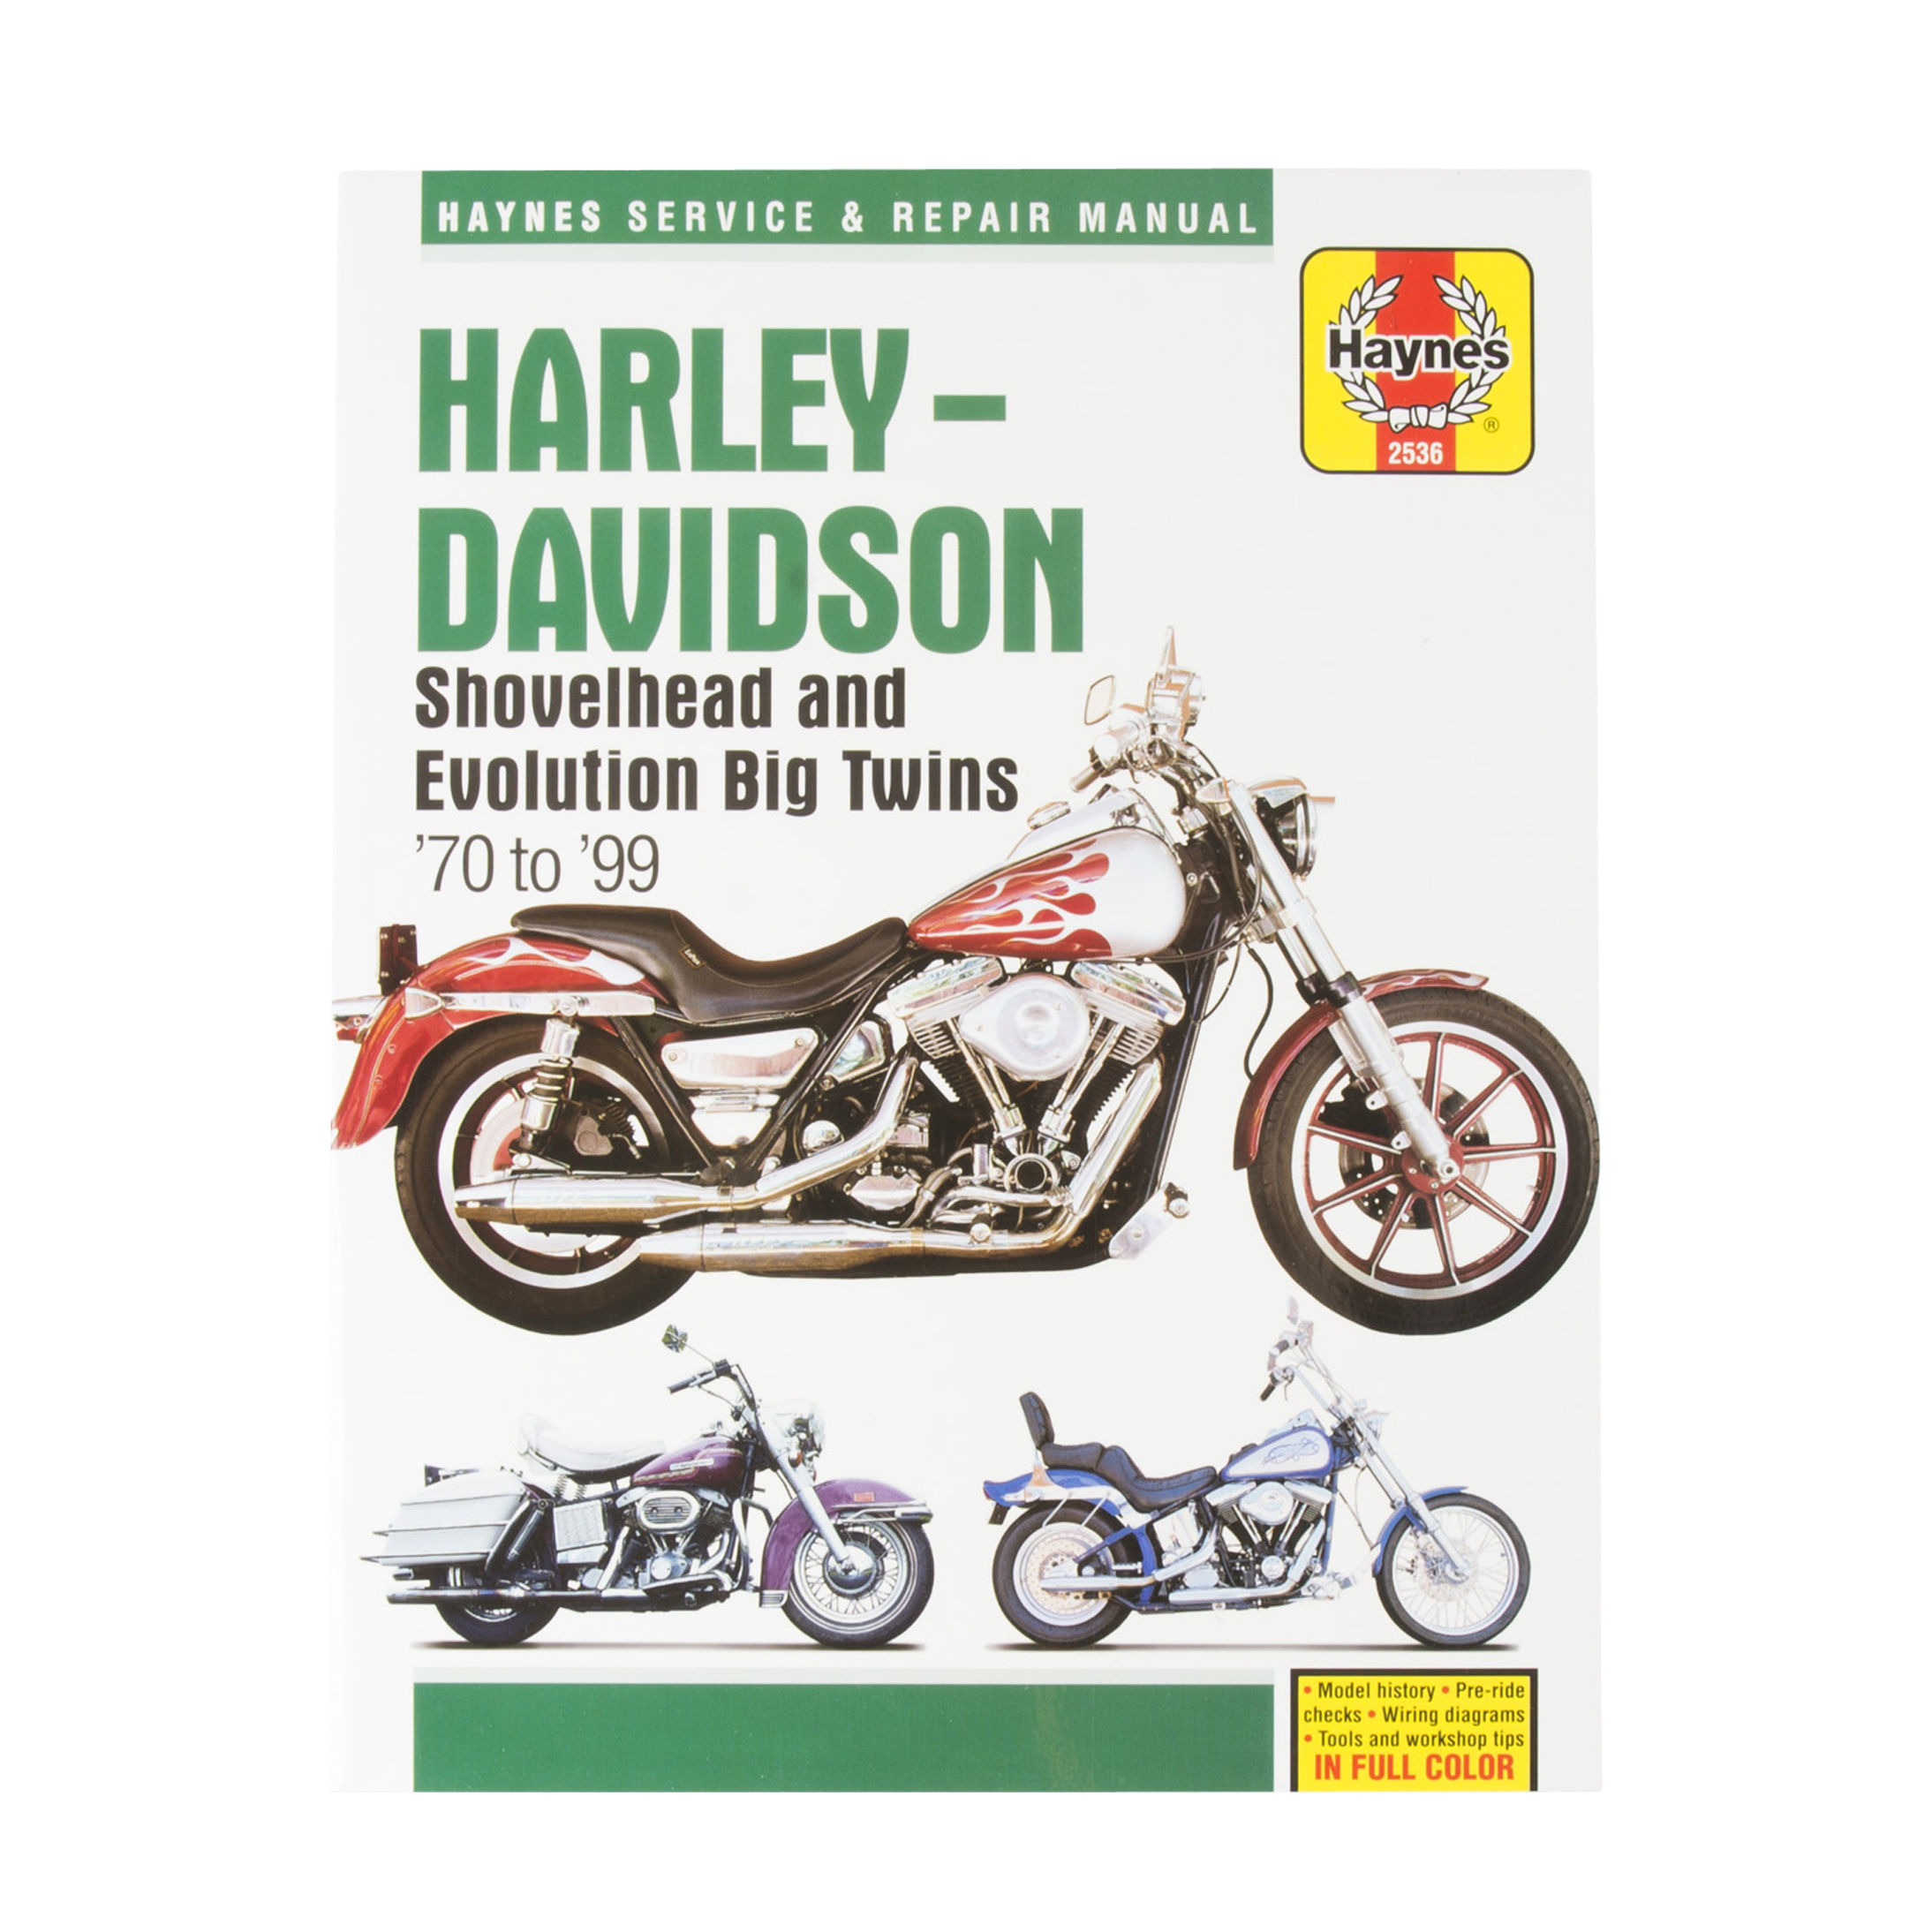 Haynes Harley Davidson Repair Manual Search By Model Dirt Cheap Price 24mx Com